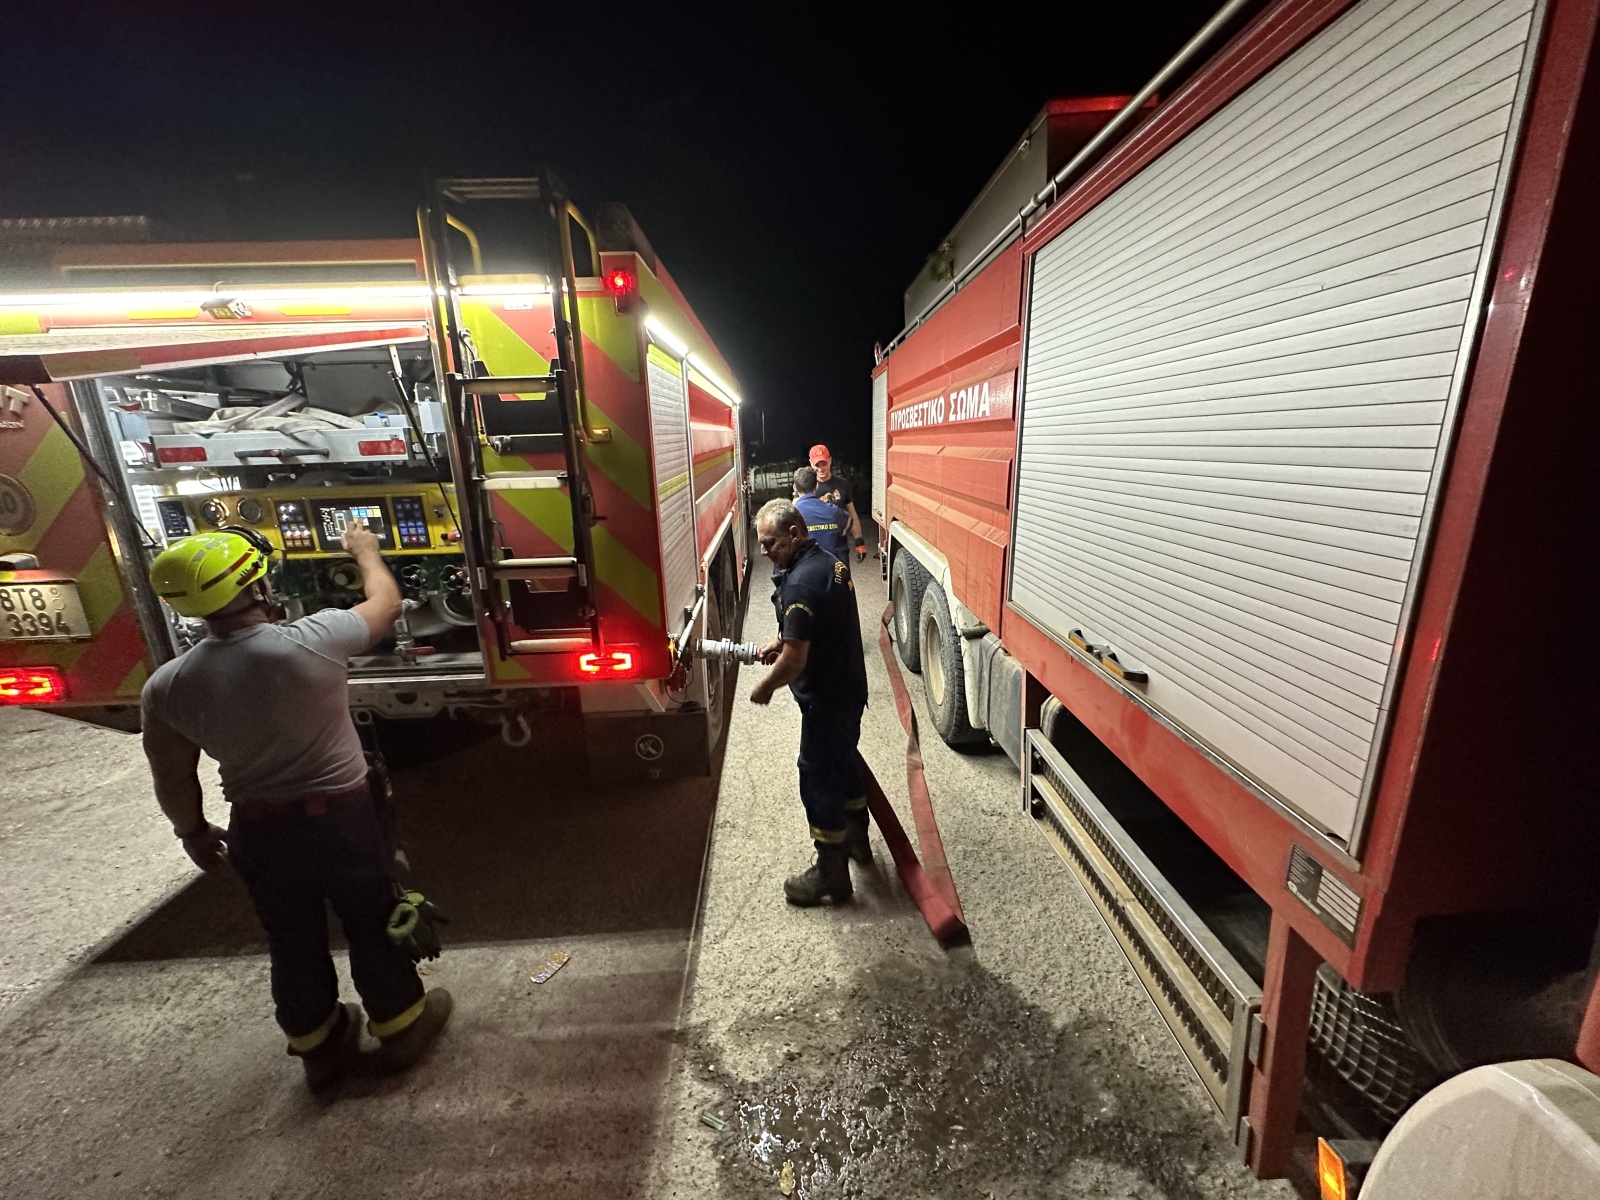 079-Pomoc českých hasičů při požárech v Řecku.JPG